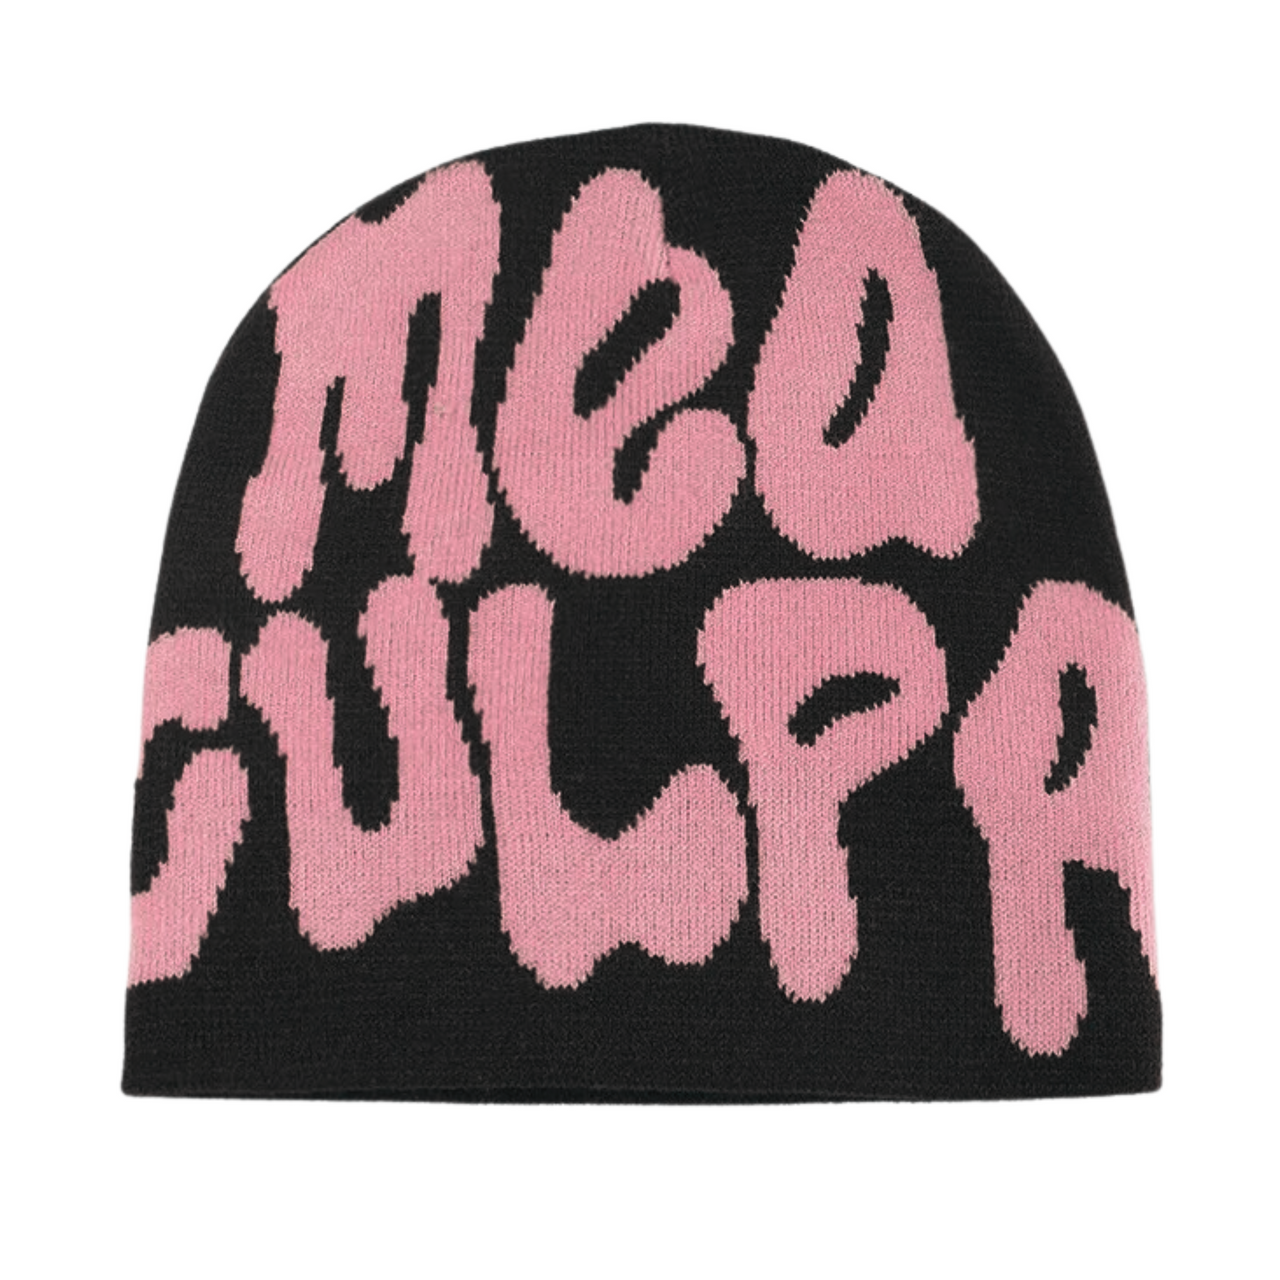 Mea Culpa (It's My Fault) Beanie Hat